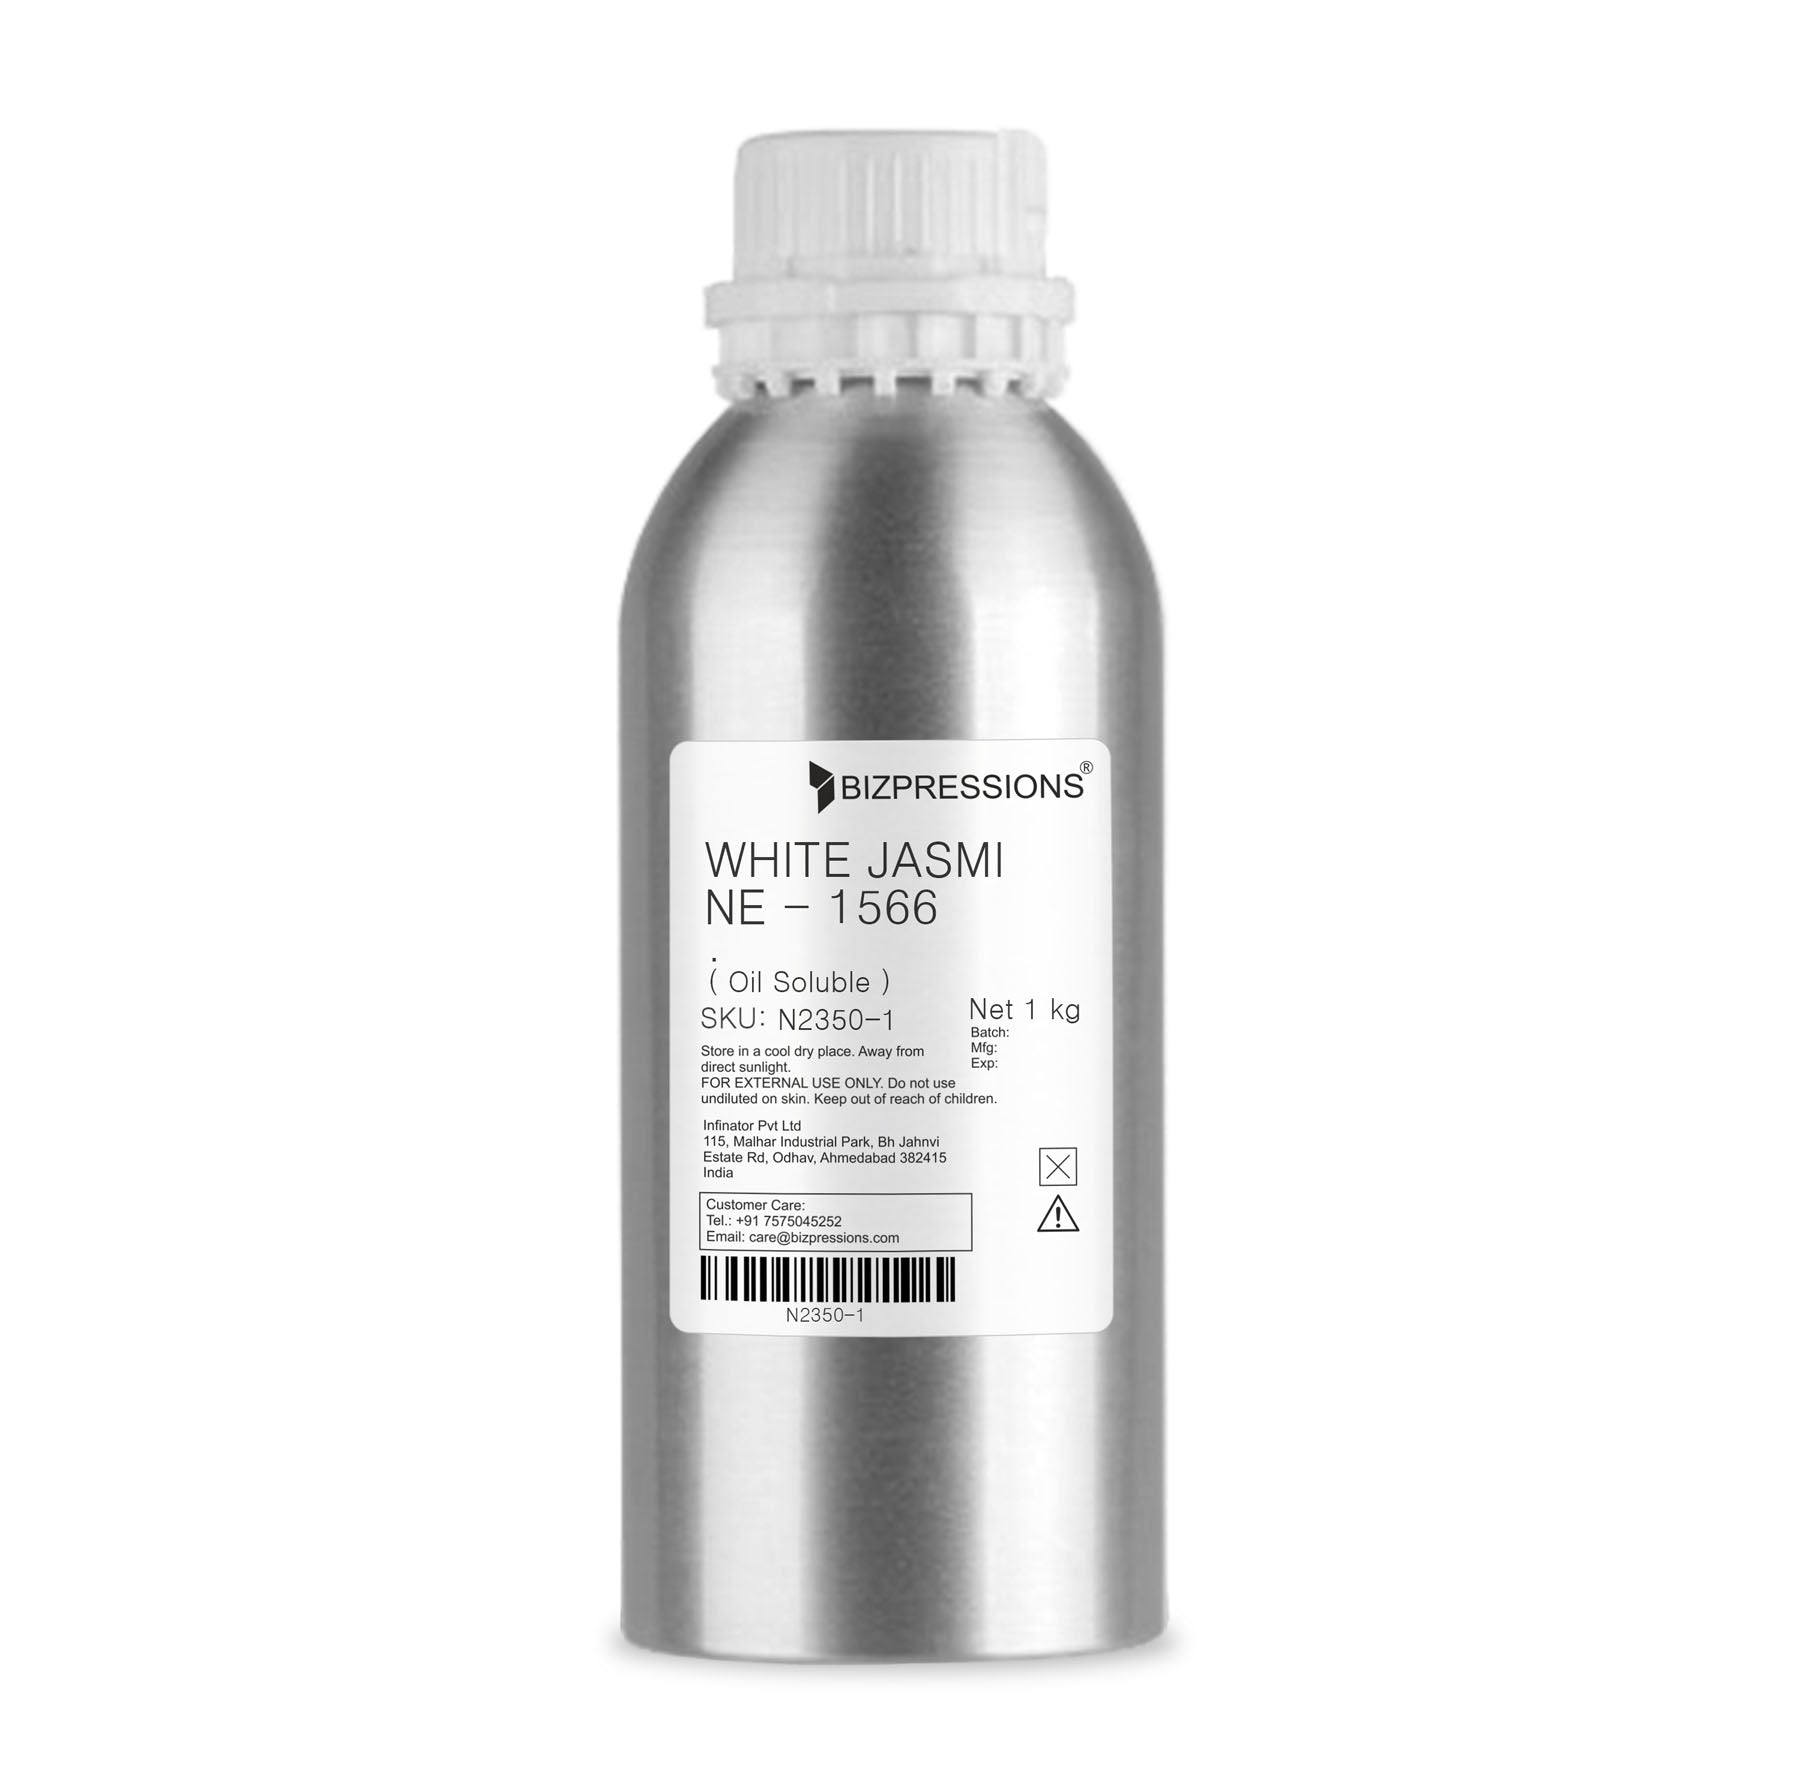 WHITE JASMINE - 1566 - Fragrance ( Oil Soluble ) - 1 kg